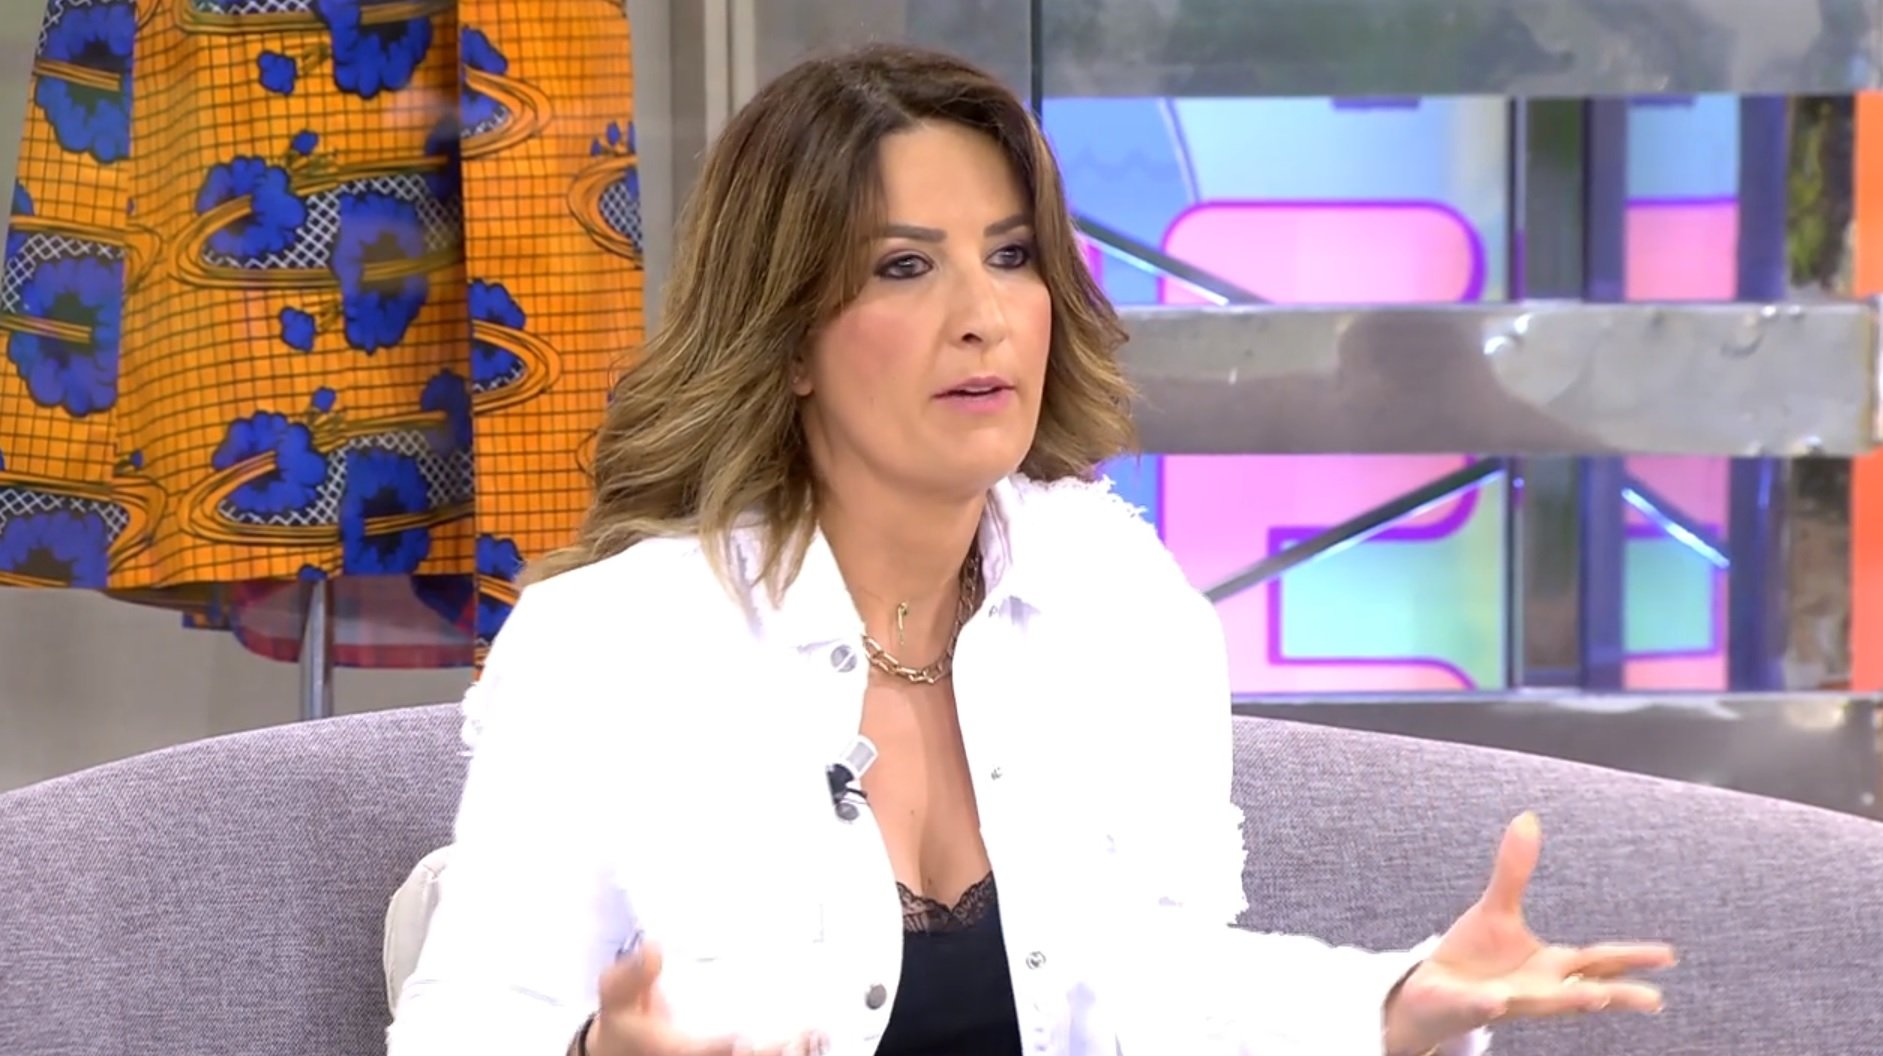 La indepe Laura Fa con camiseta de España en T5 y la insultan: "que asco das"